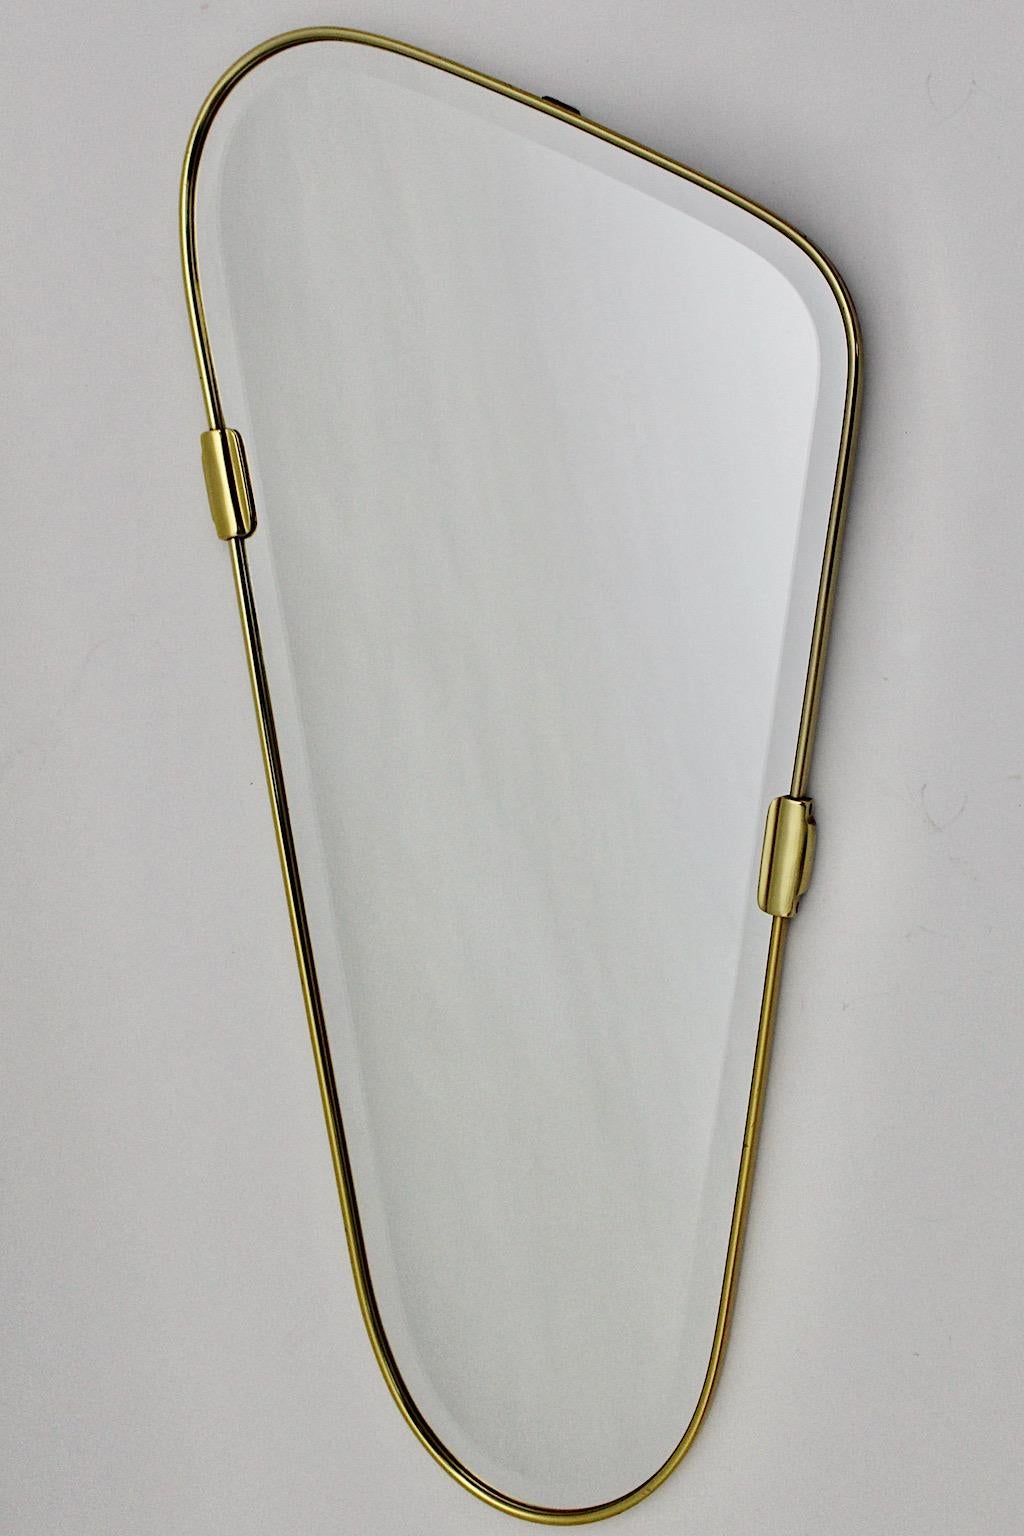 Mid Century Modern Vintage ovaler Wandspiegel aus Messing und facettiertem Spiegelglas 1950er Jahre Italien.
Erstaunlicher Wandspiegel mit dickem massivem Messingrahmen und zwei Messingspangen als Dekor, während das erneuerte Spiegelglas ein